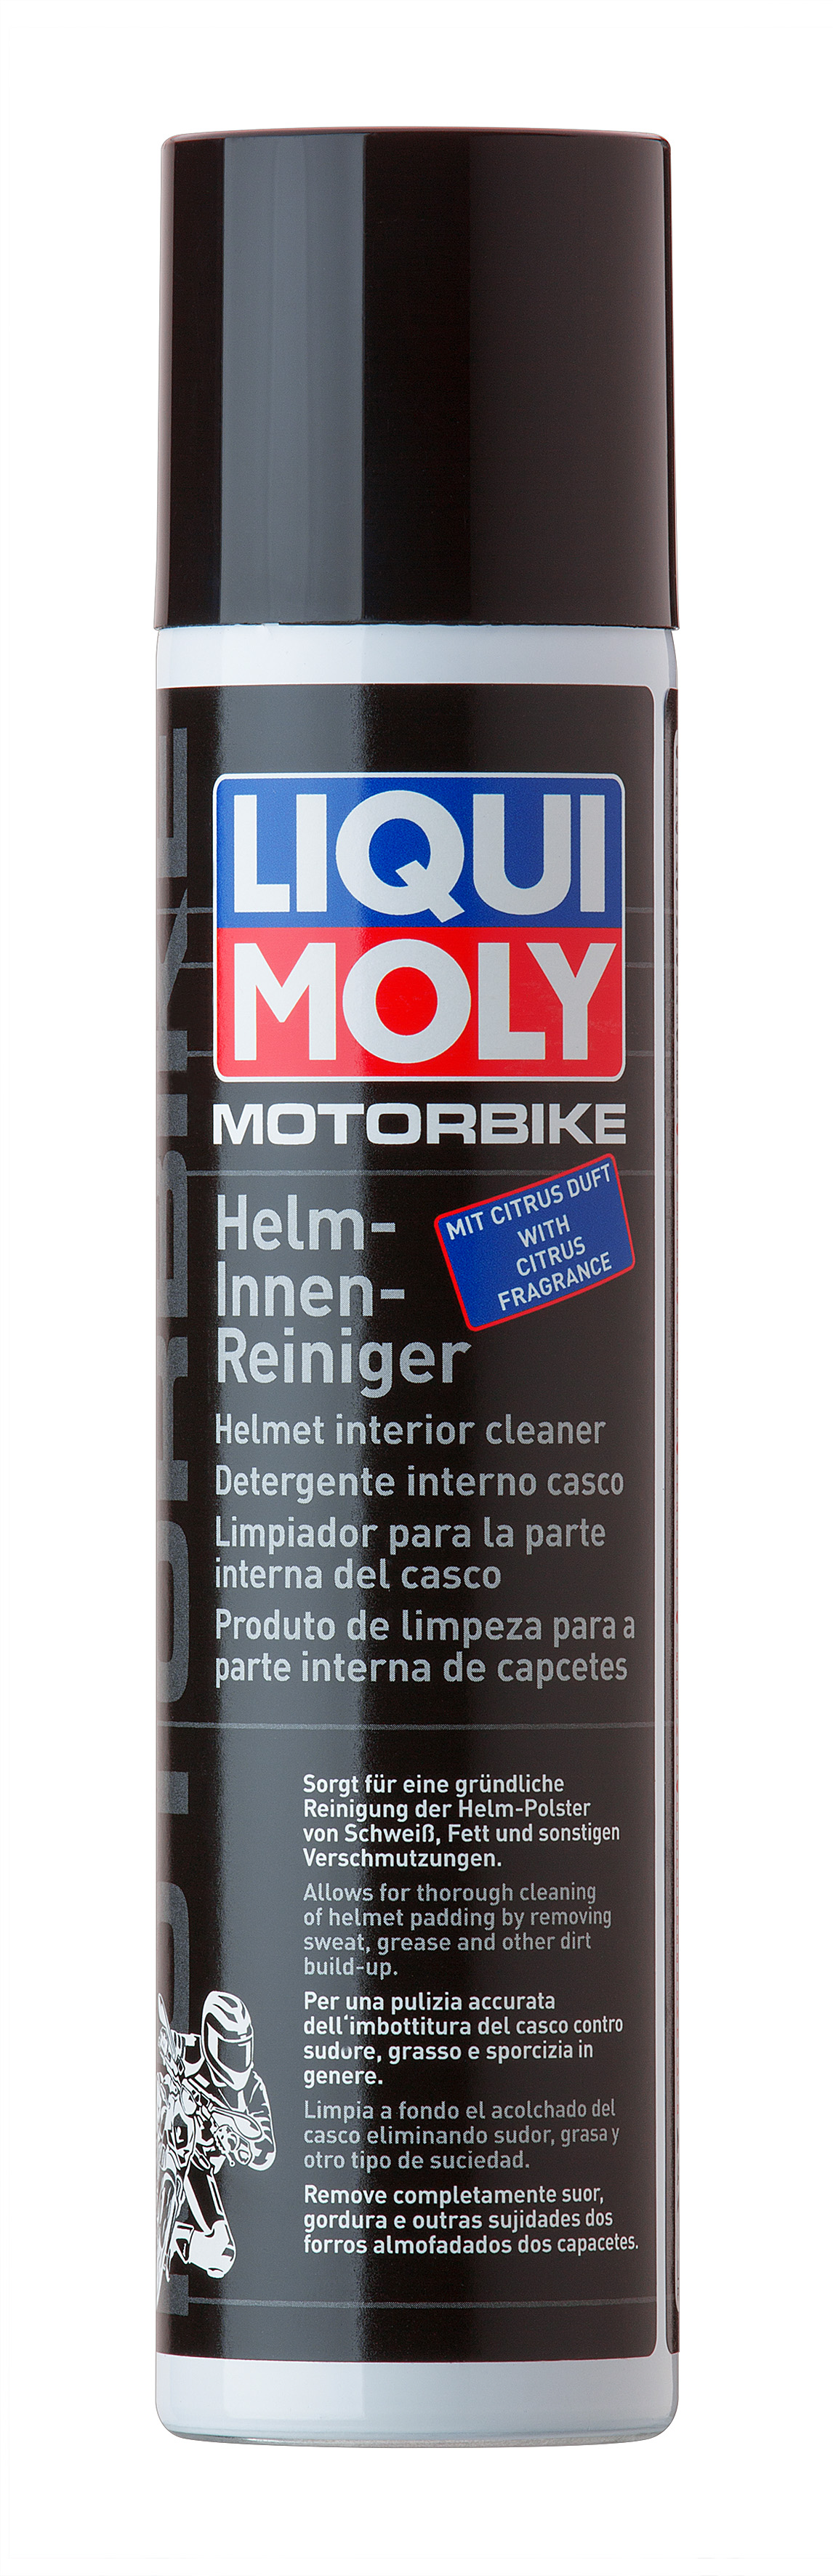 Очиститель мотошлемов Motorbike Helm-Innen-Reiniger, 300мл - Liqui Moly 1603